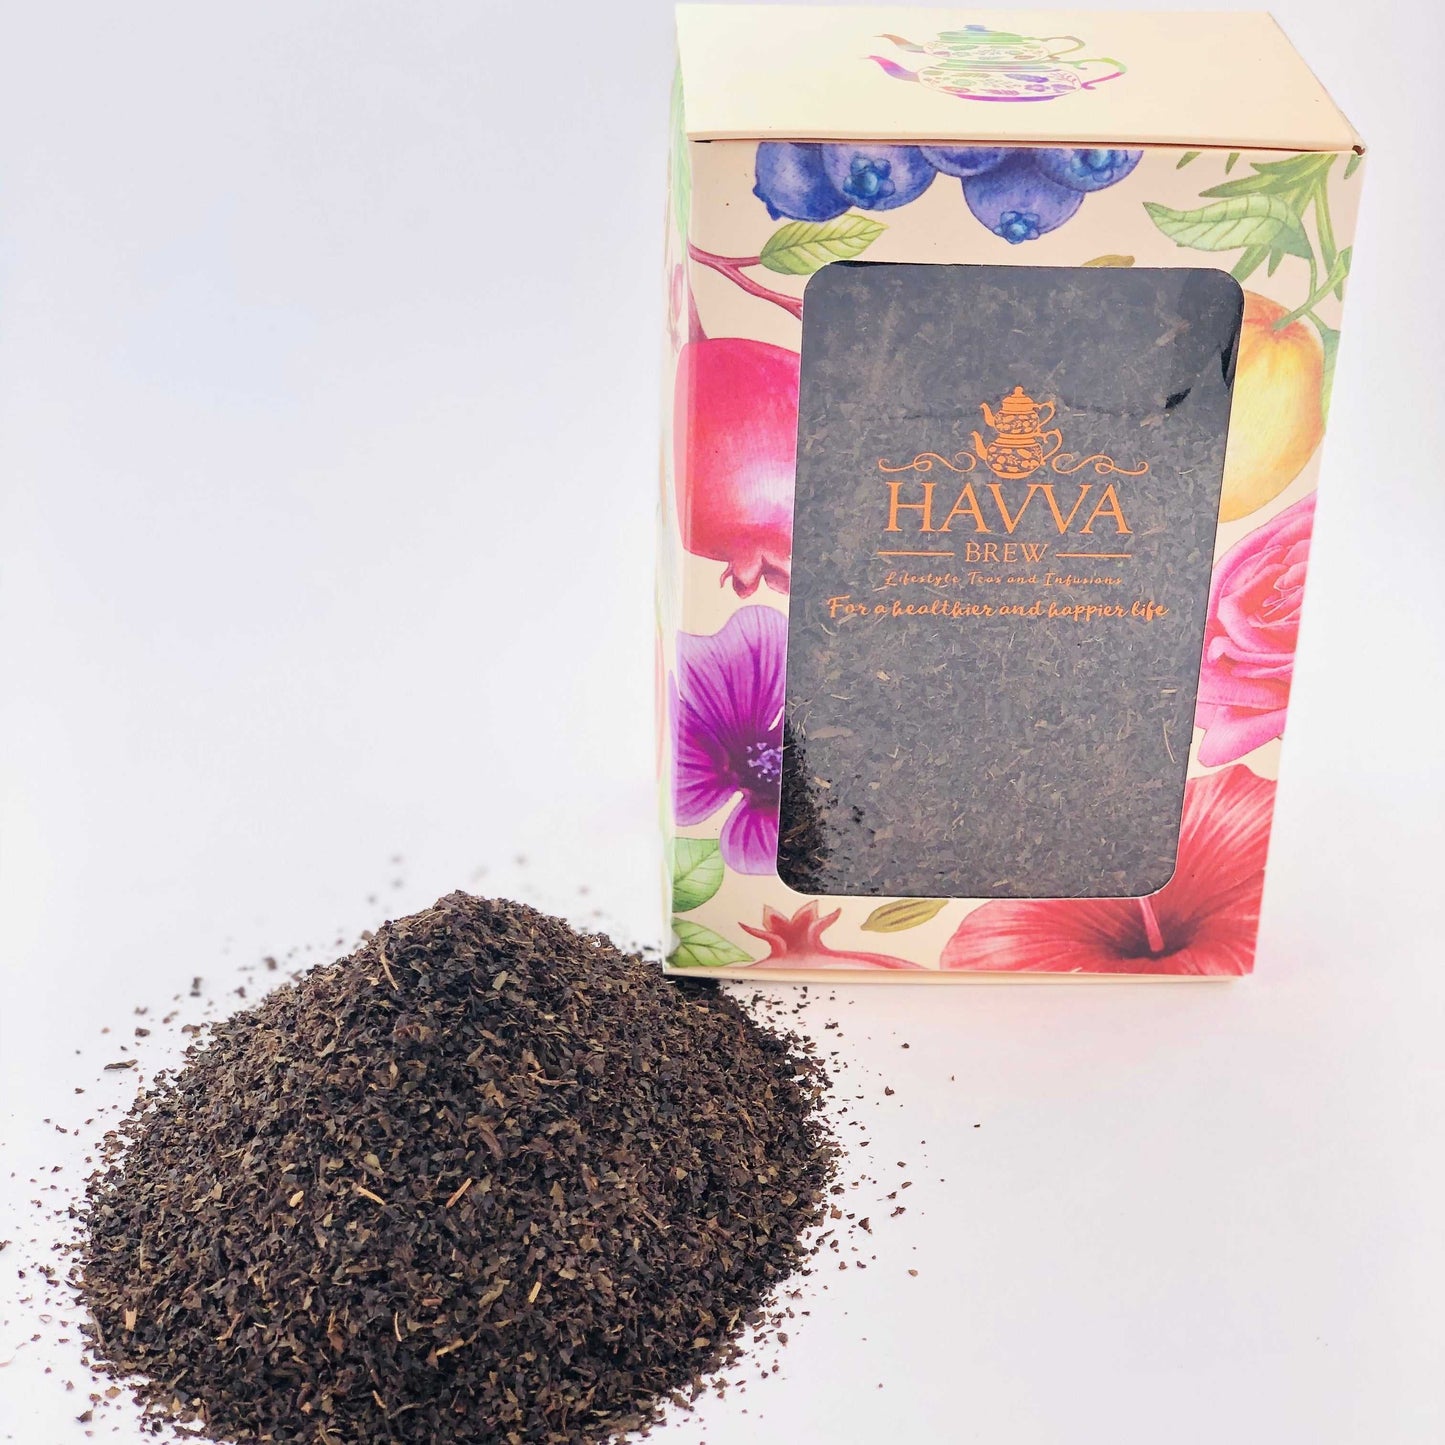 Havva Brew, Premium Turkish Black Tea